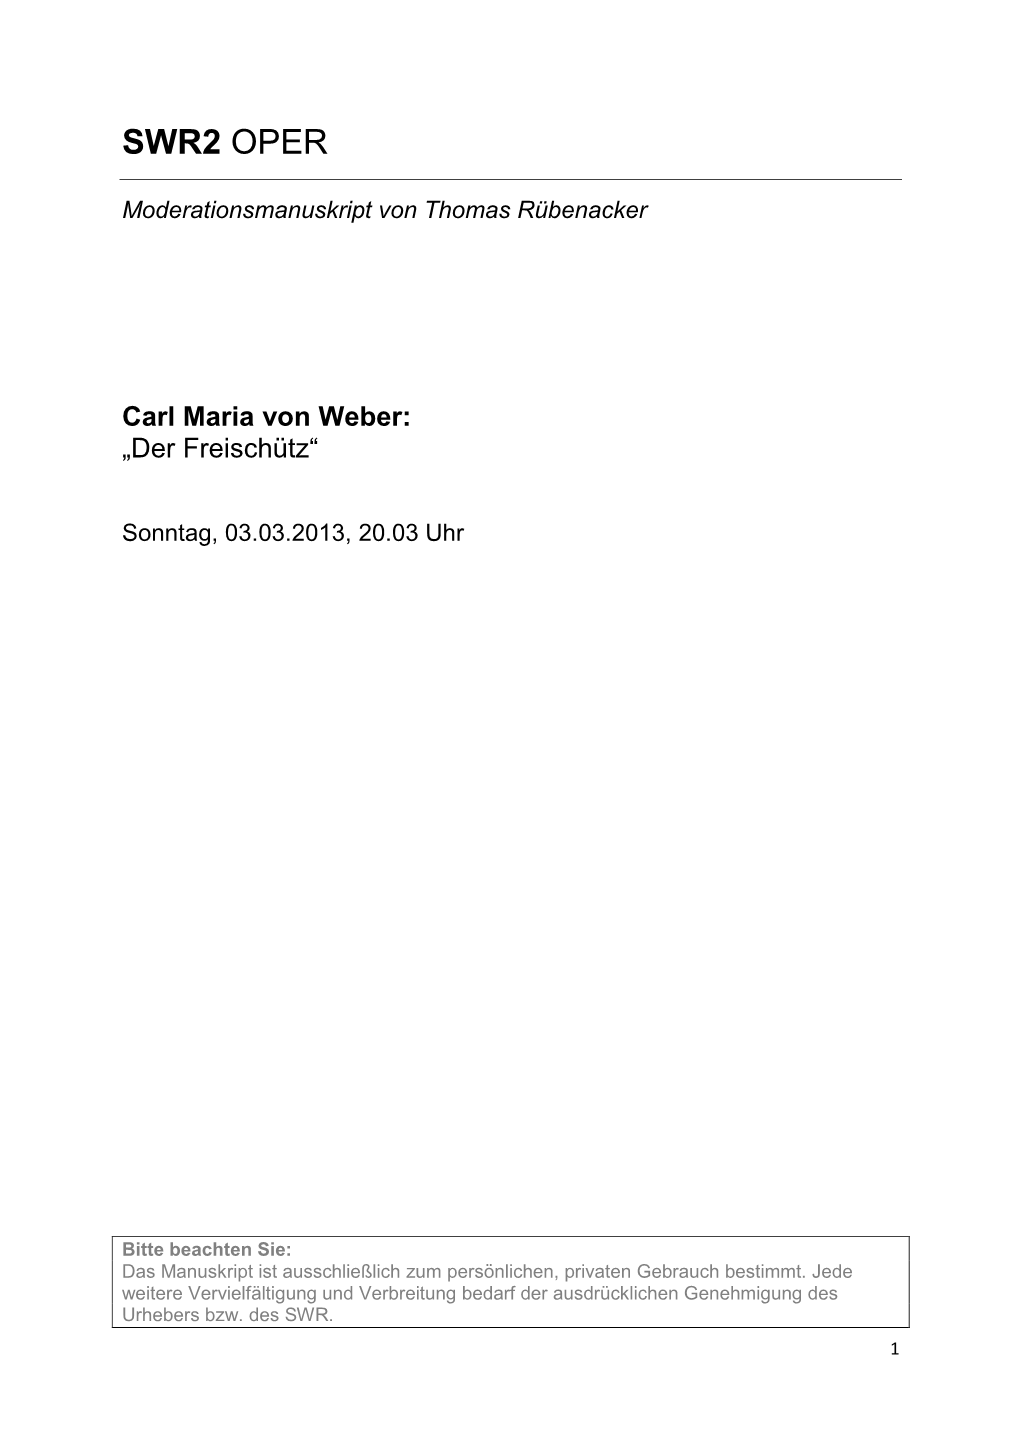 Carl Maria Von Weber: „Der Freischütz“